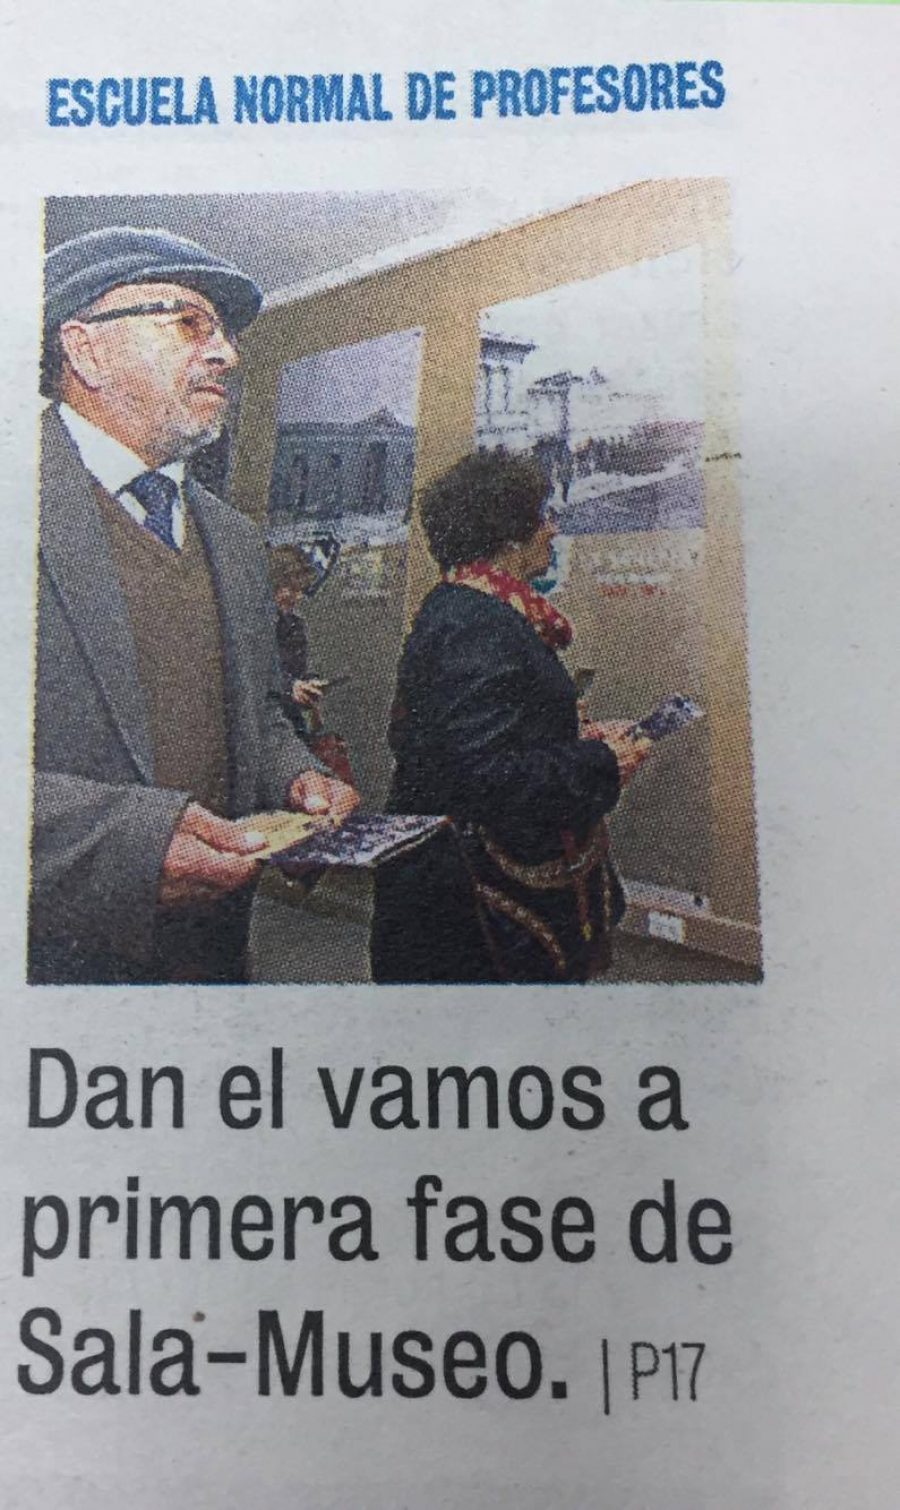 07 de noviembre en Diario La Prensa: “Dan el vamos a primera fase Sala-Museo”